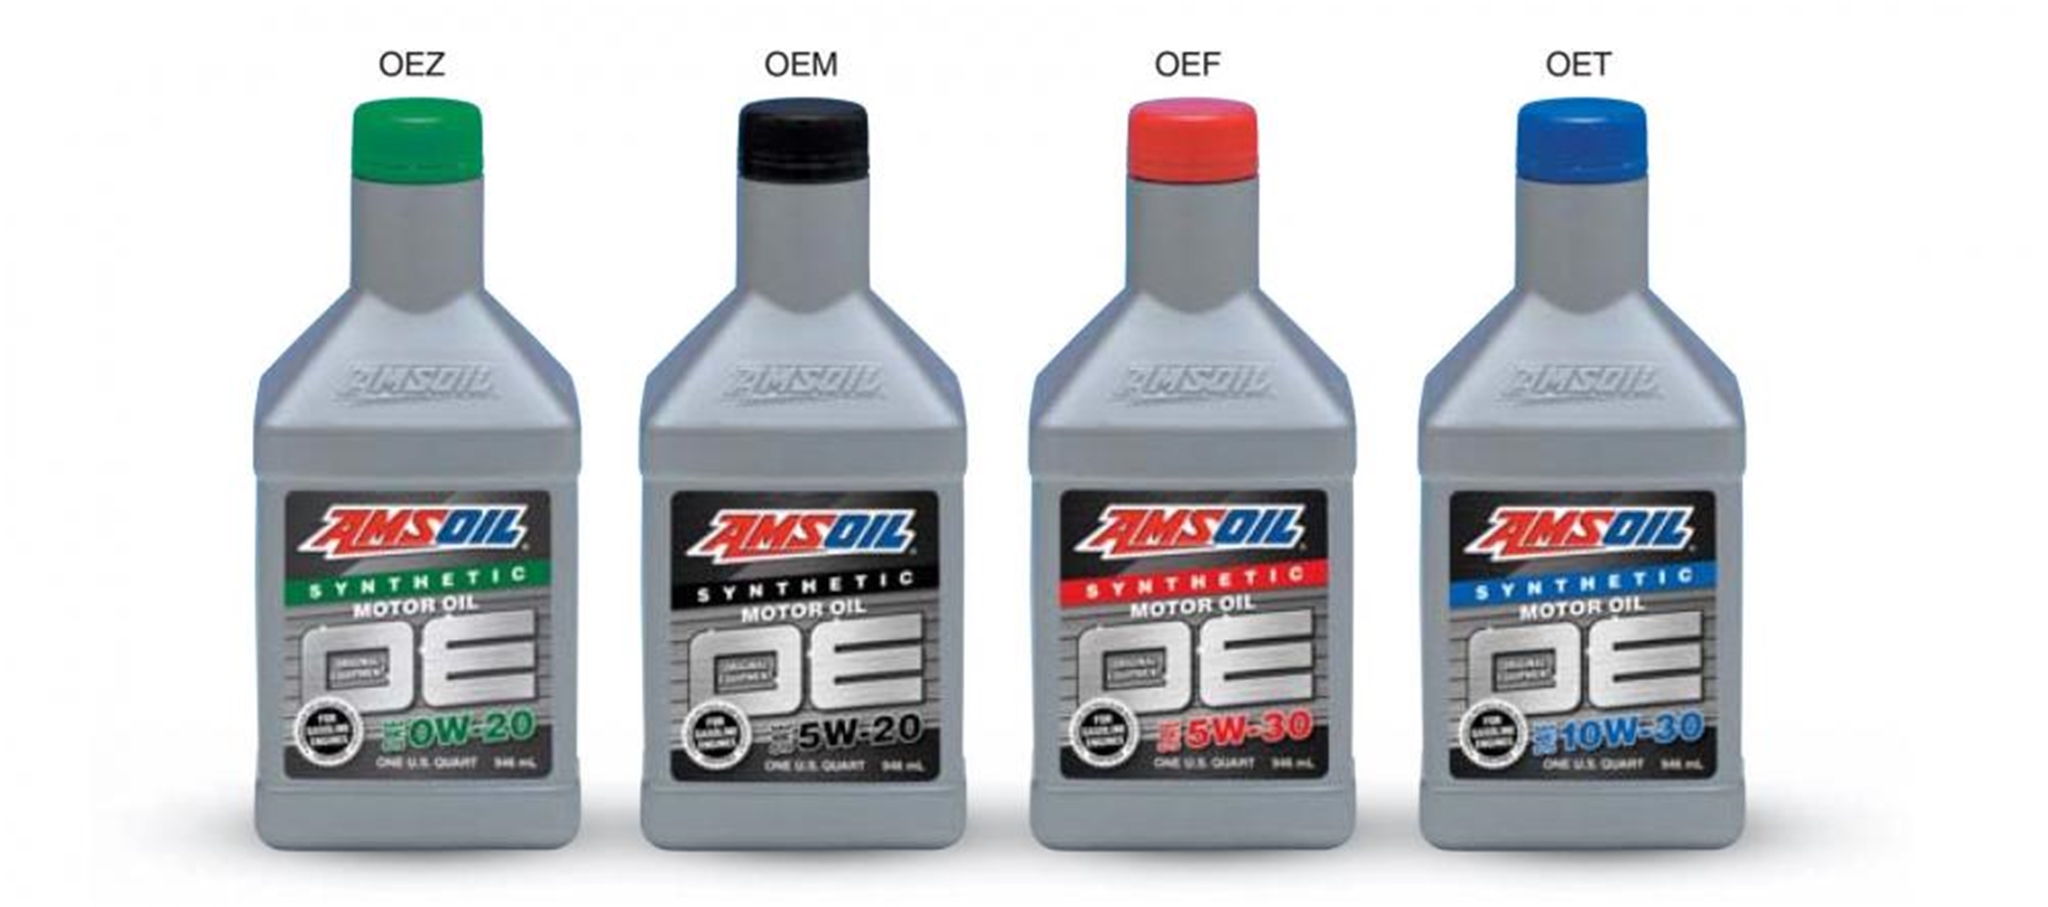 OE Synthetic Motor Oils